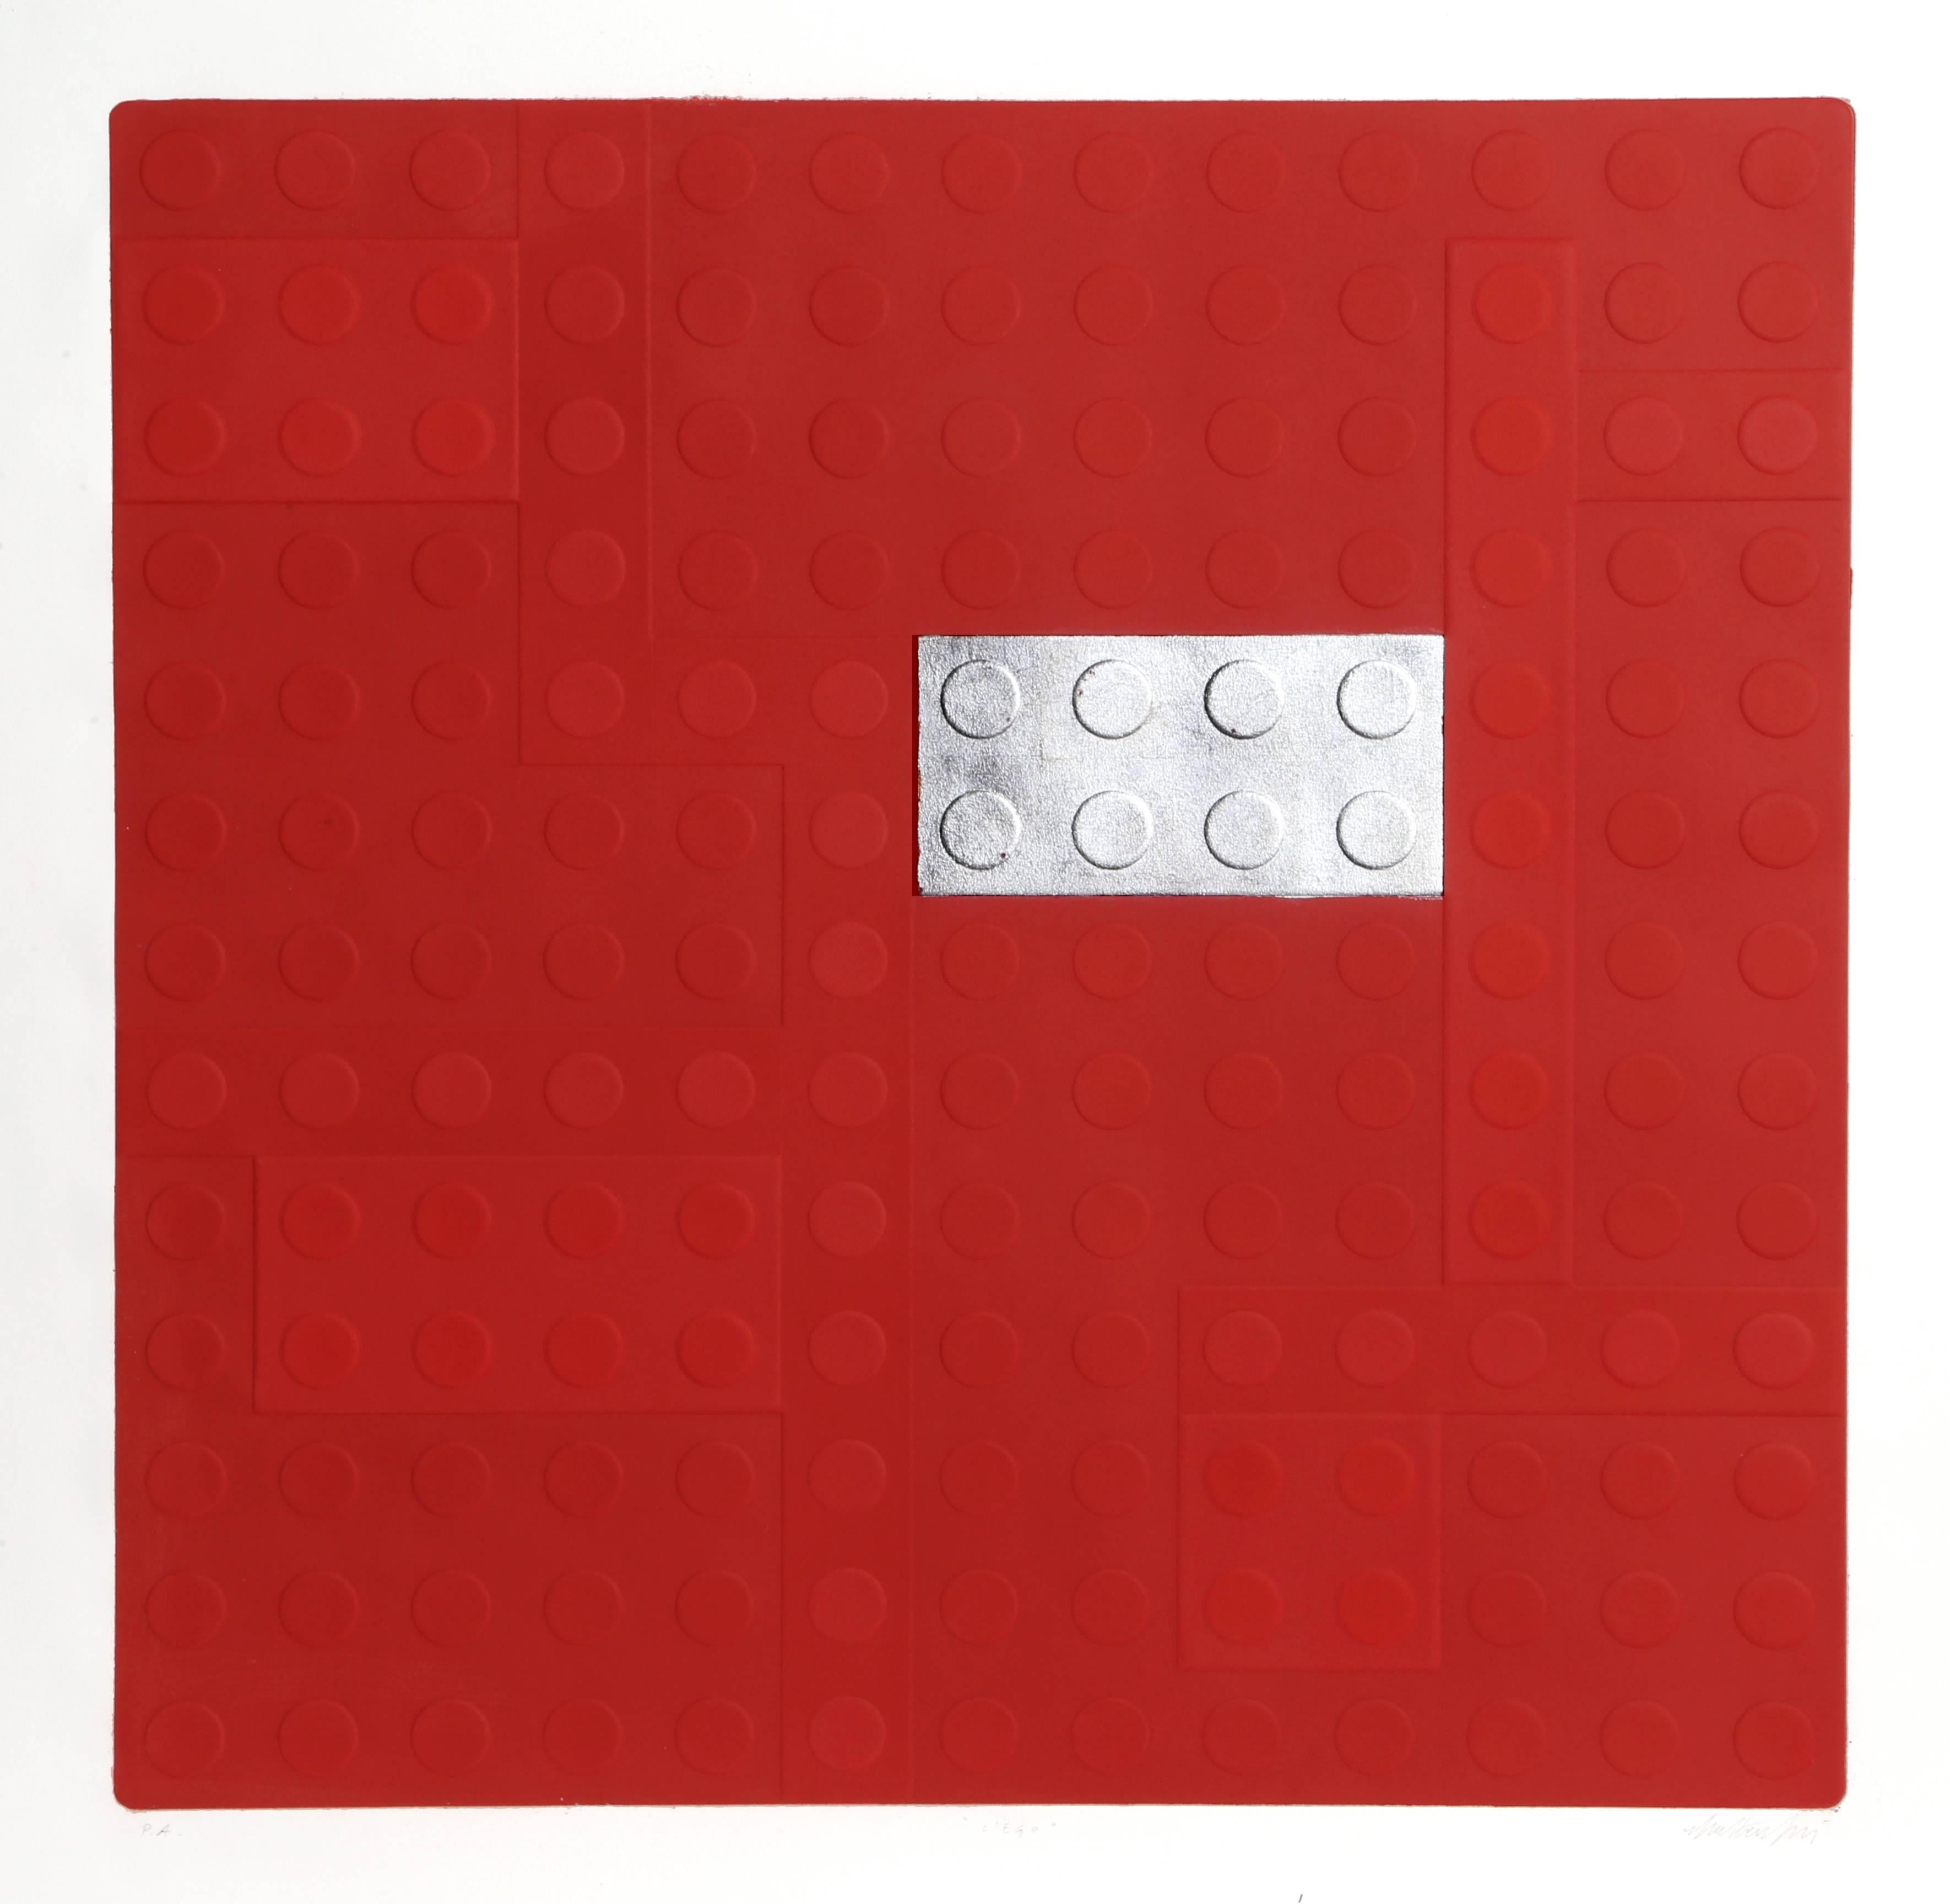 Matteo Negri Figurative Print - Lego (Red)